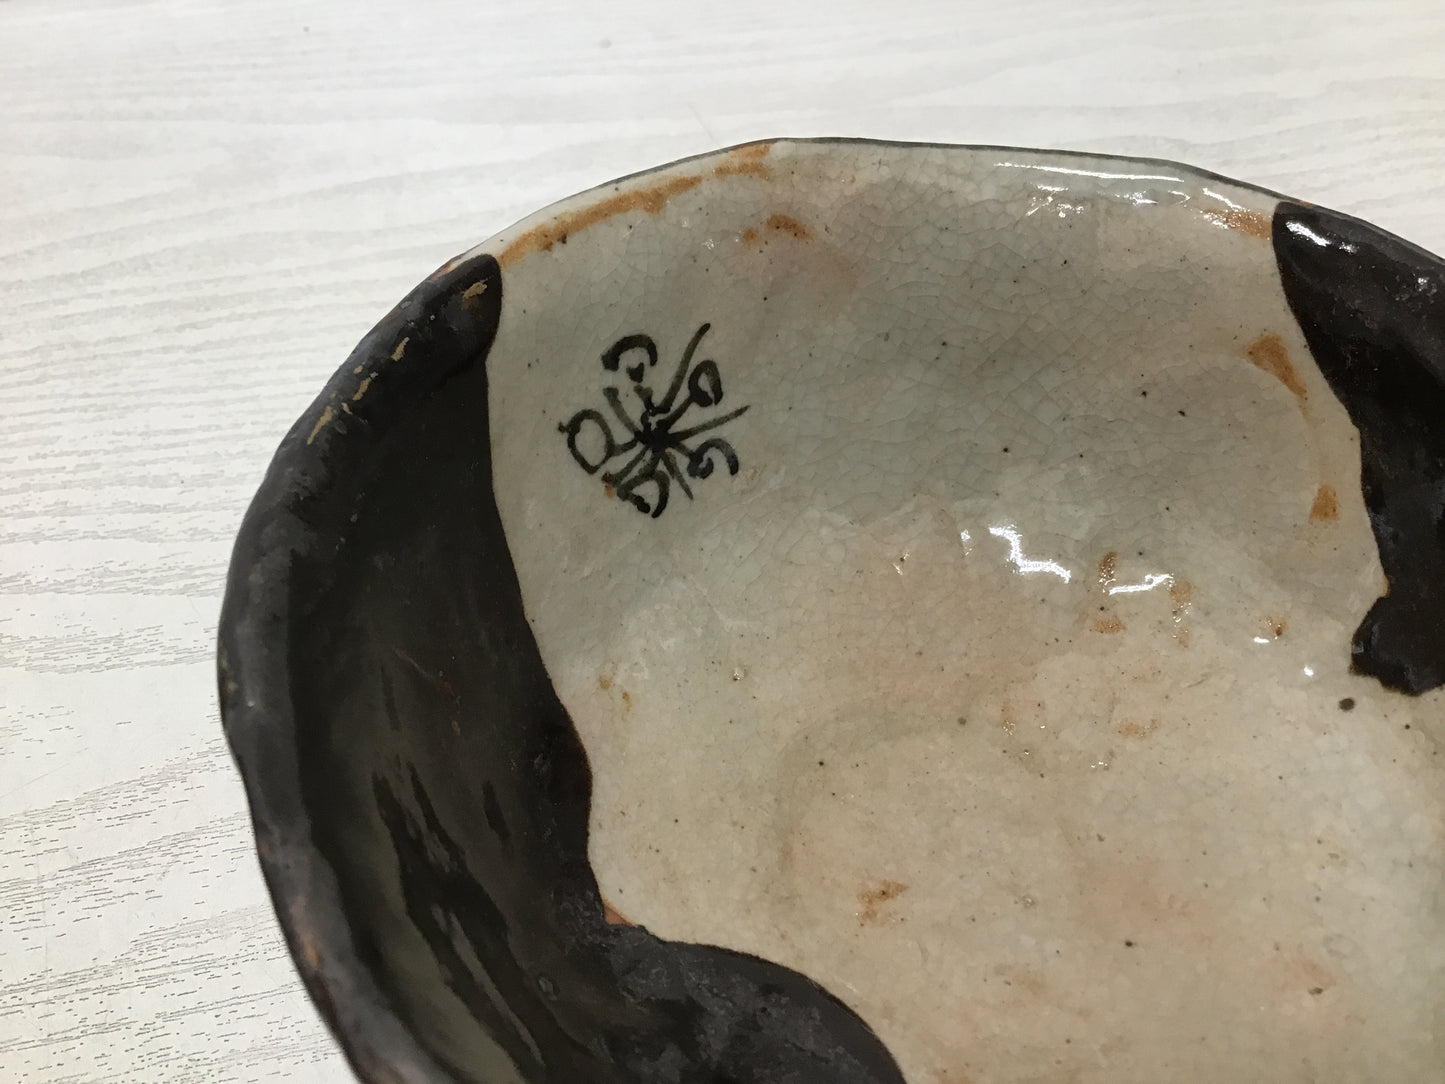 Y1816 CHAWAN Tsurumai-ware signed box Japanese bowl pottery Japan tea ceremony